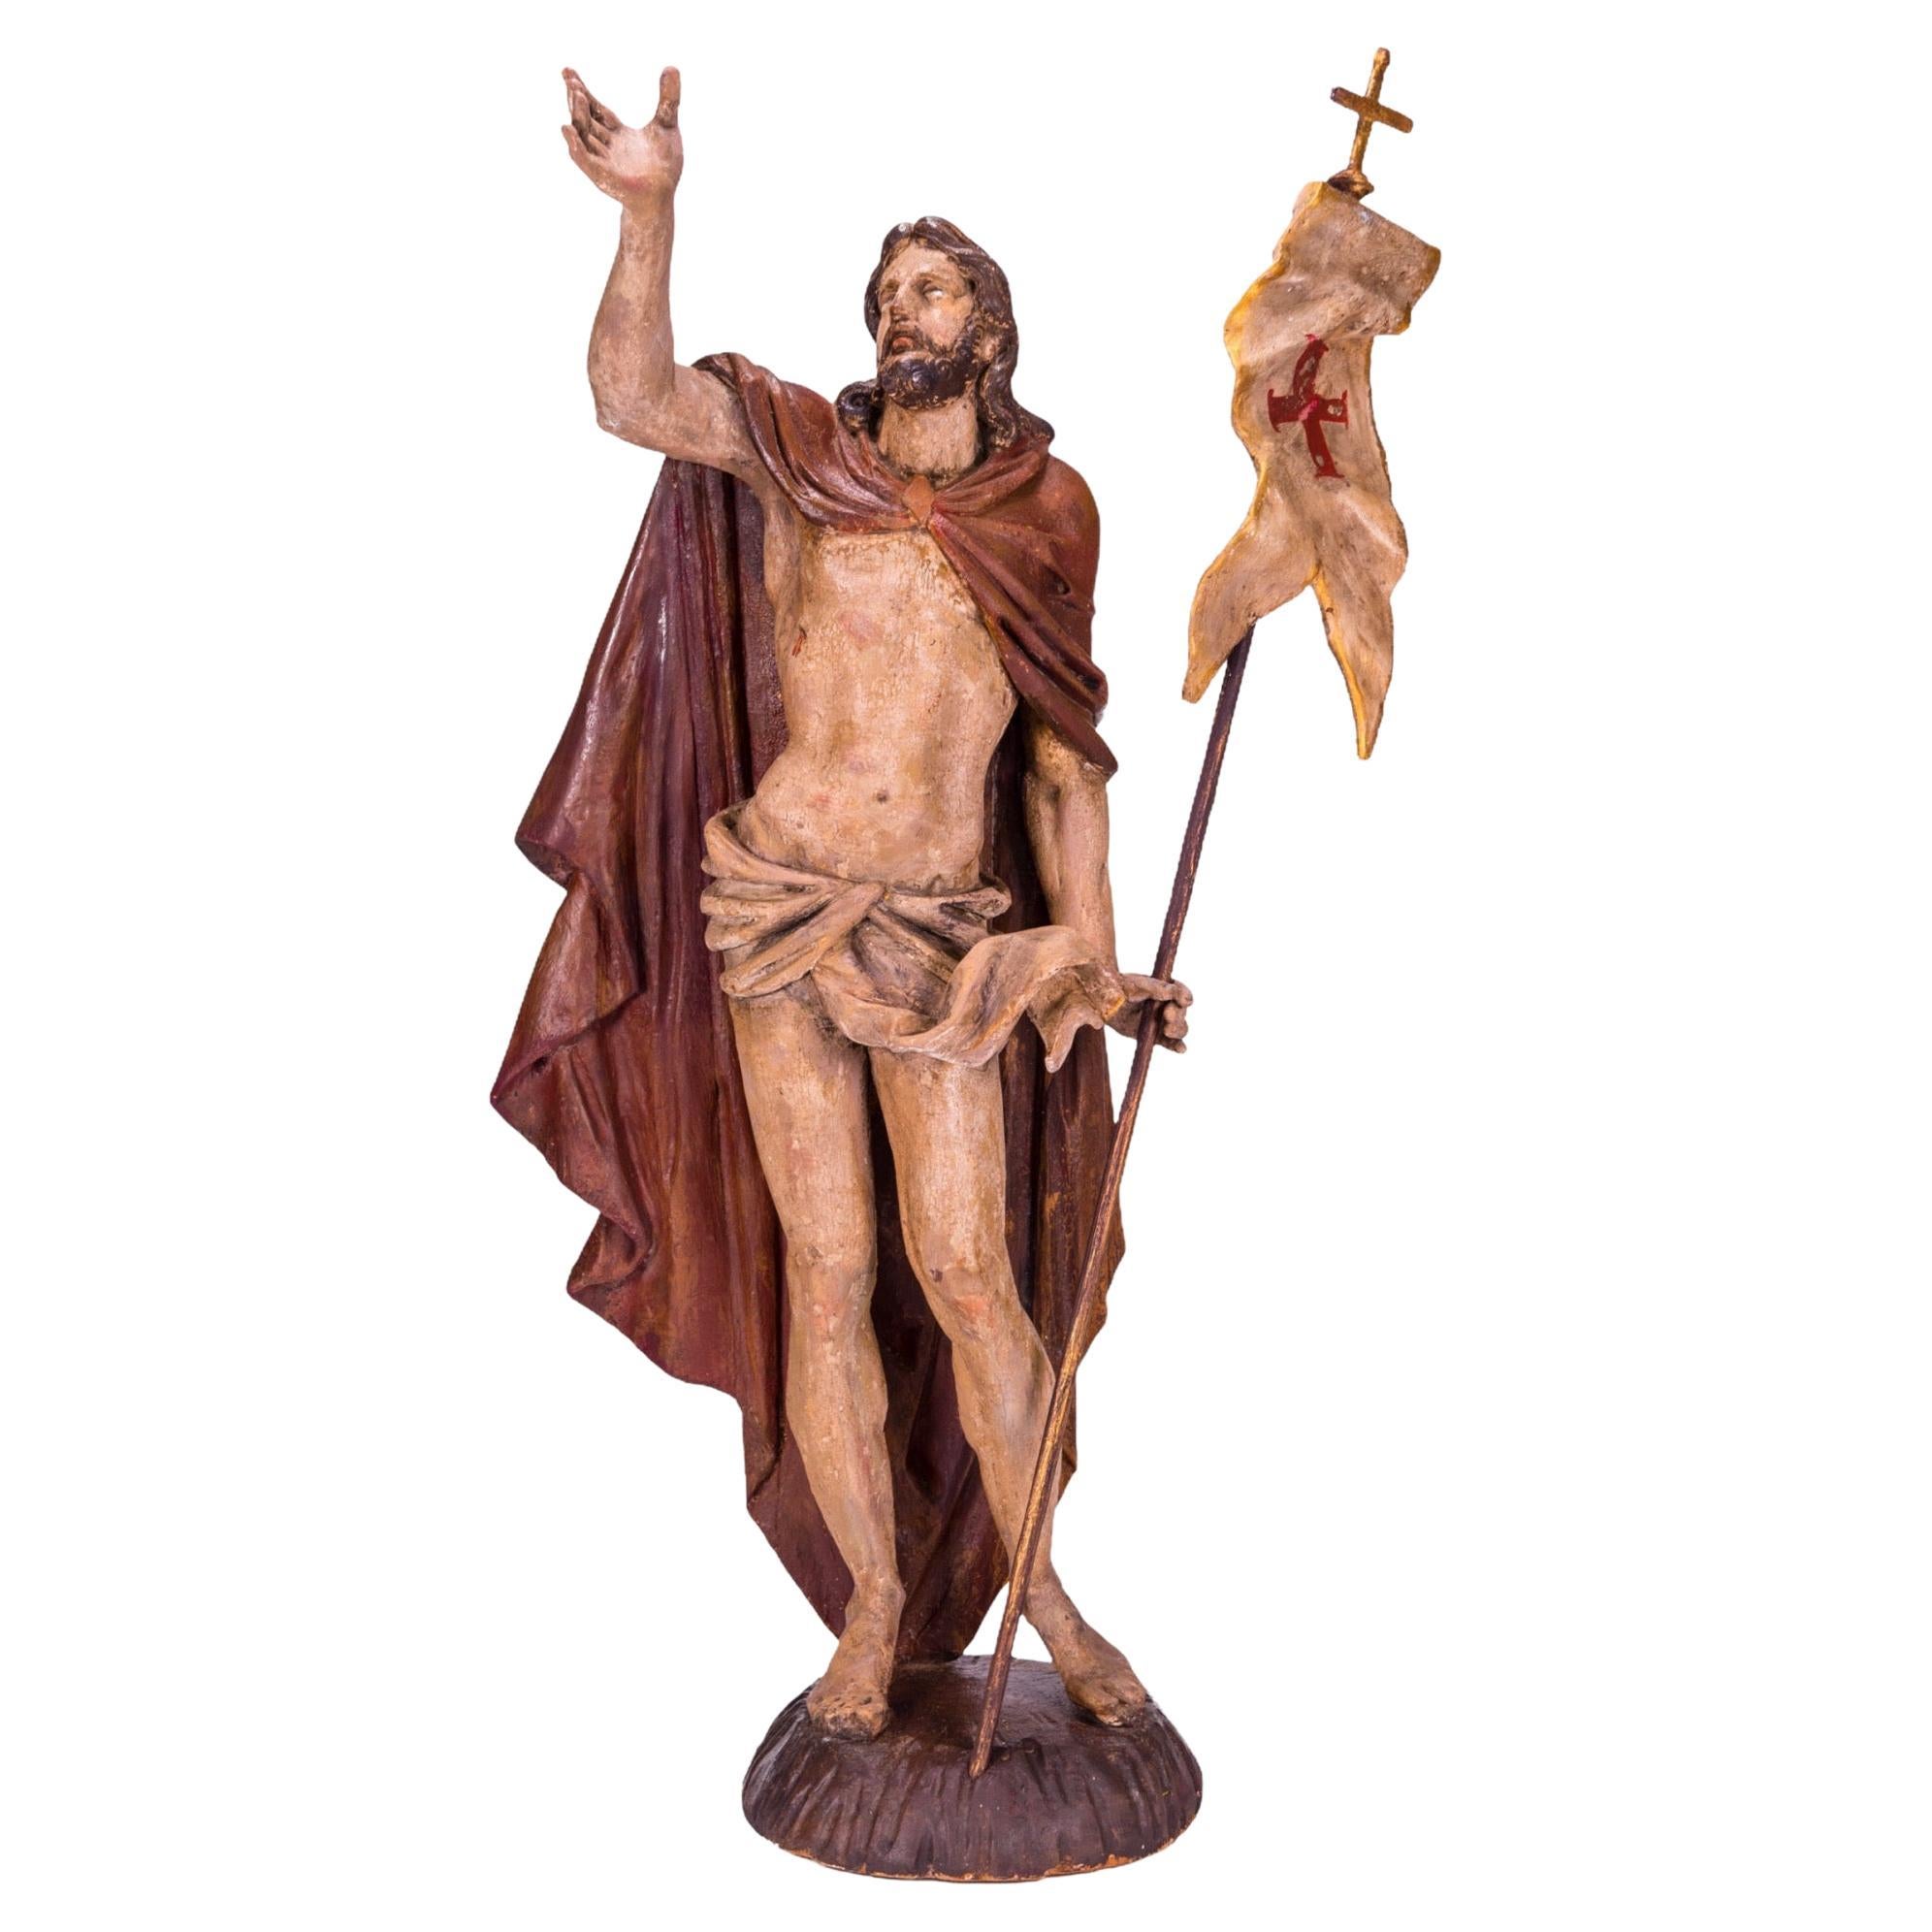 Jesus Christus, der Schöpfer, die nach seiner Auferstehung die Flagge erhöht, 16. Jahrhundert